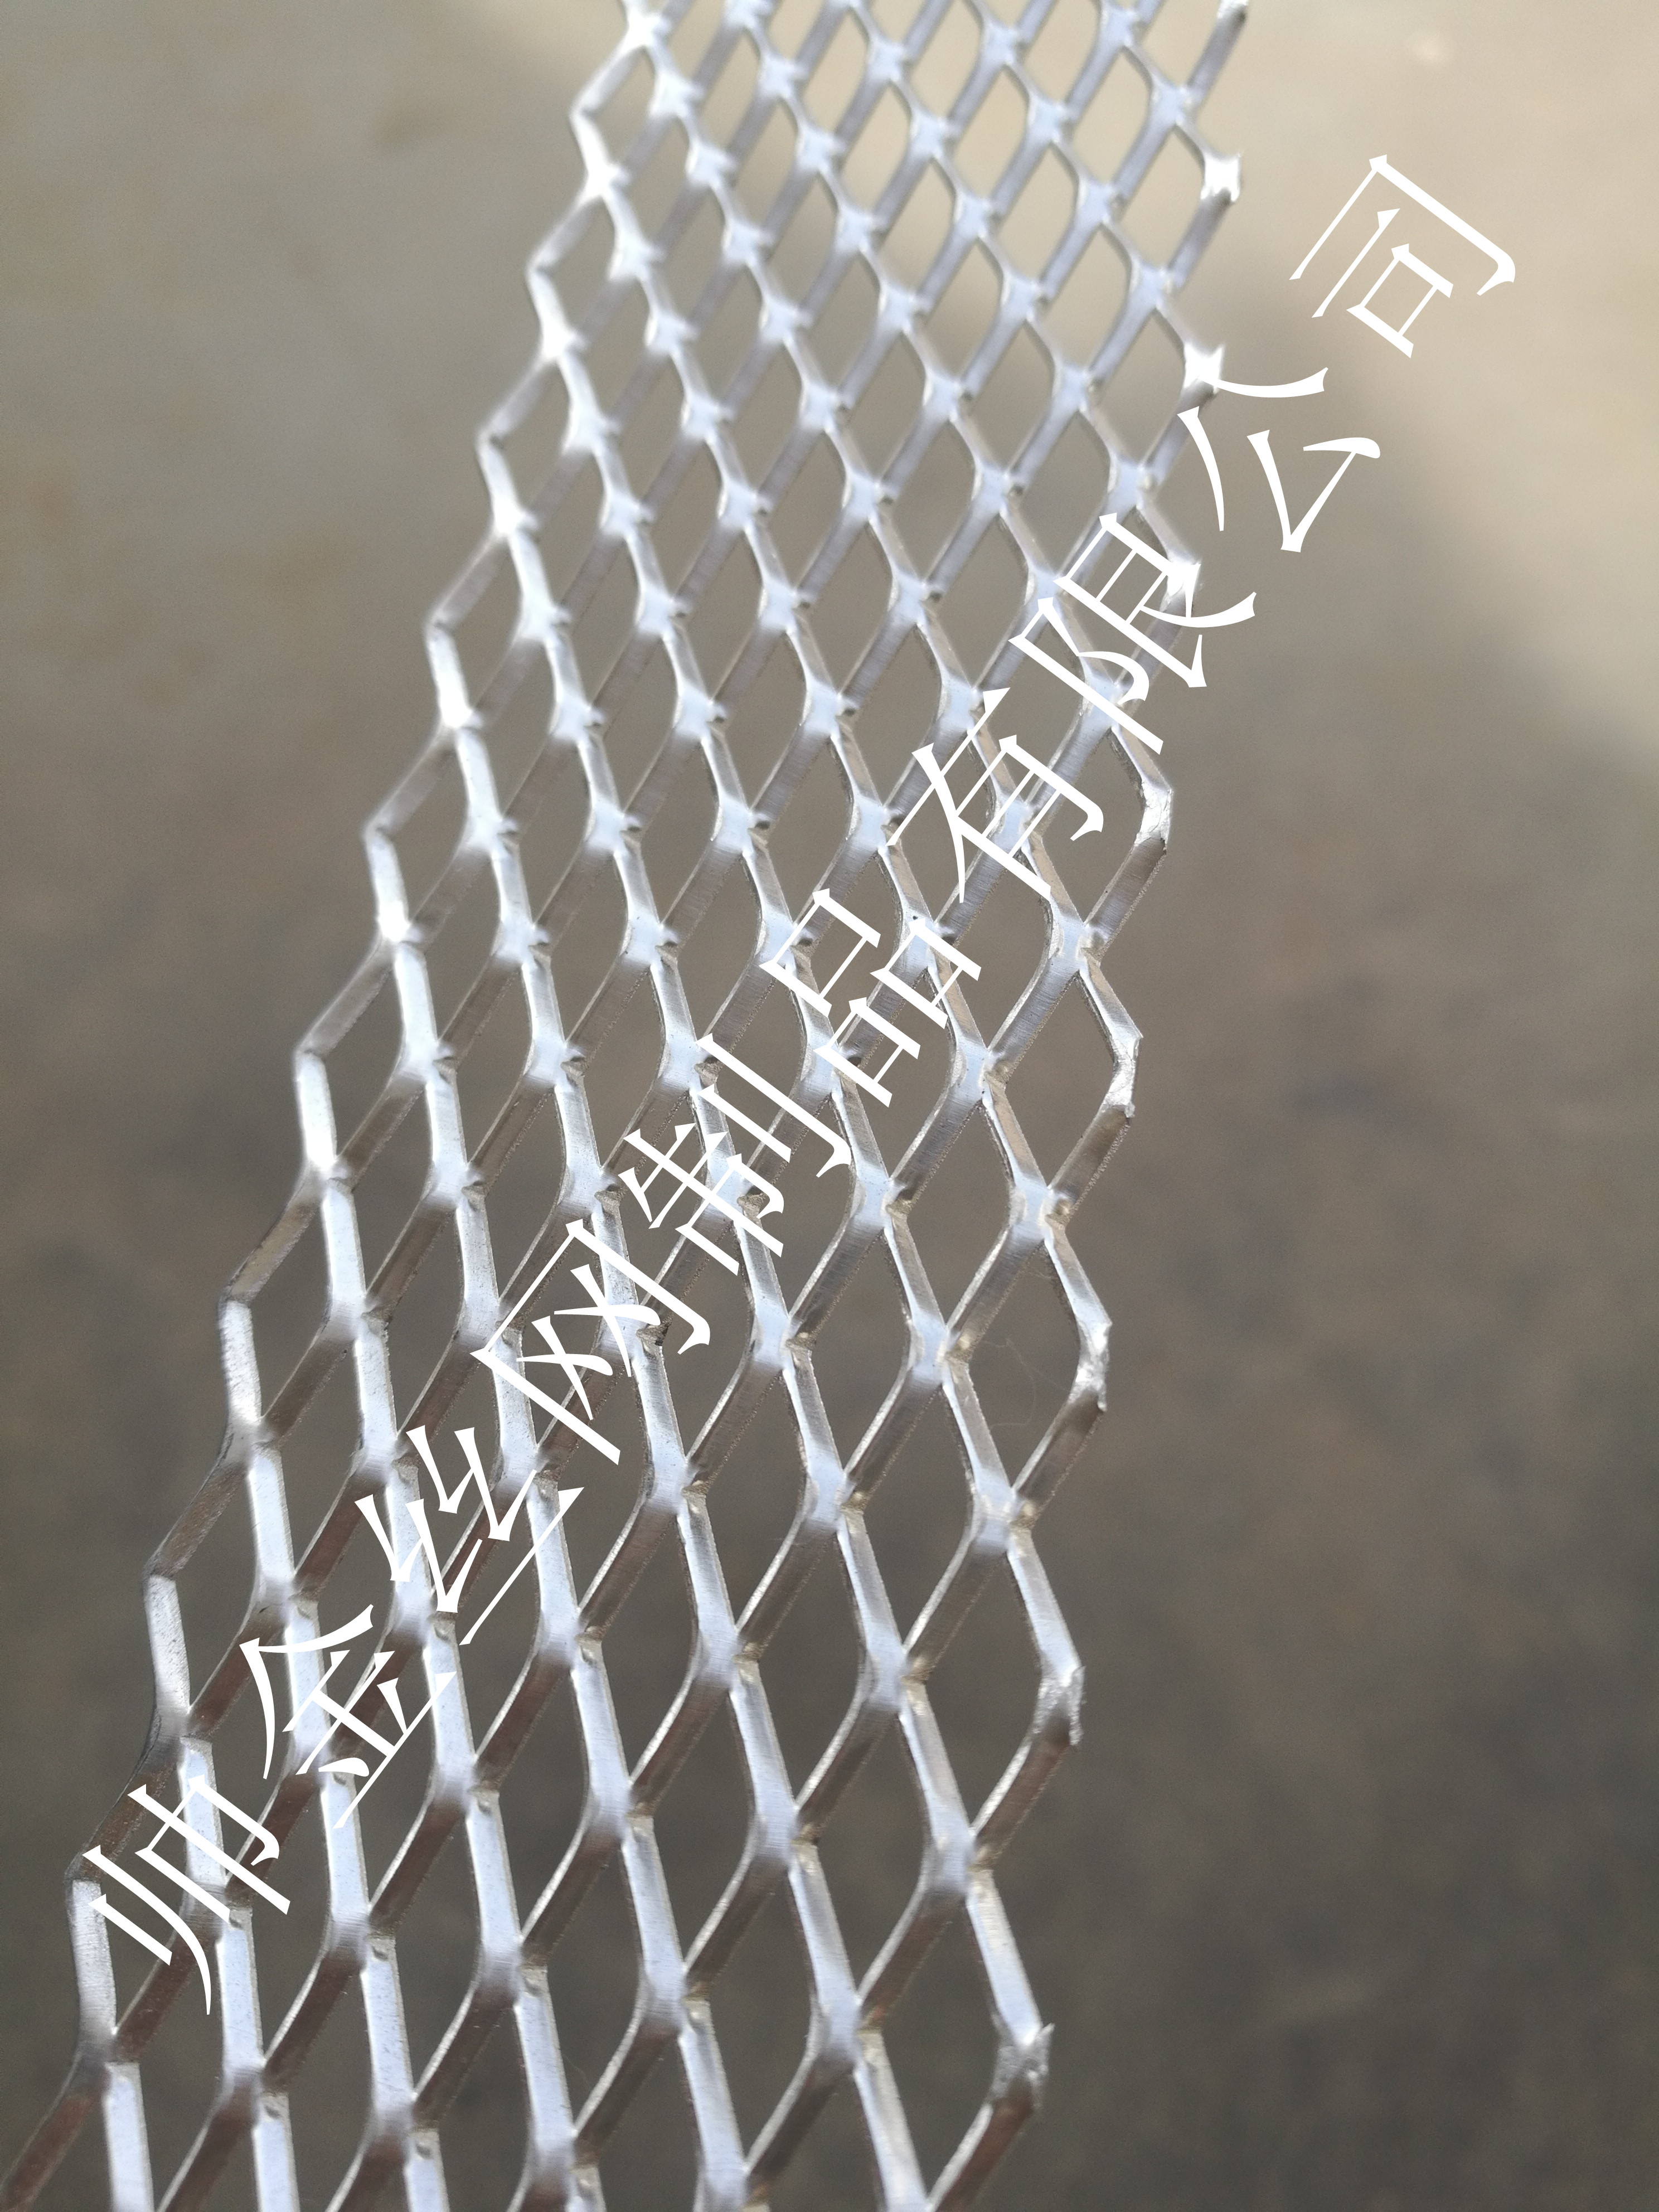 幕墙装饰铝板网厂家,防锈铝板网,菱形铝丝网厂家,批发菱形铝板网,北京雄安装饰铝网吊顶图片